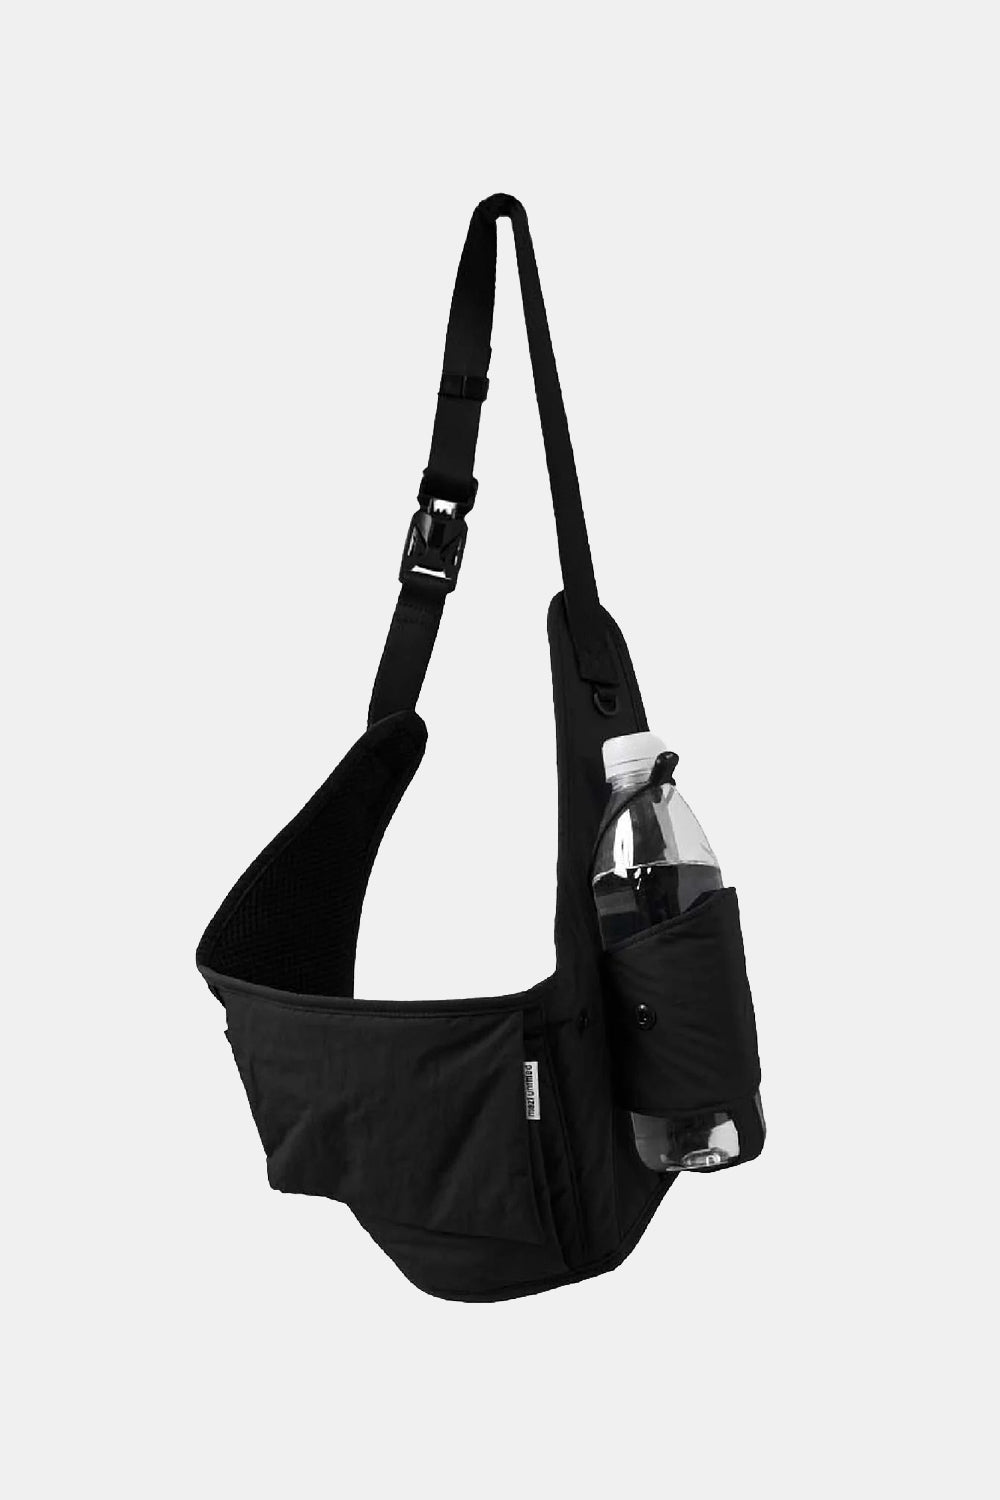 Mazi Movement Bag (Black)